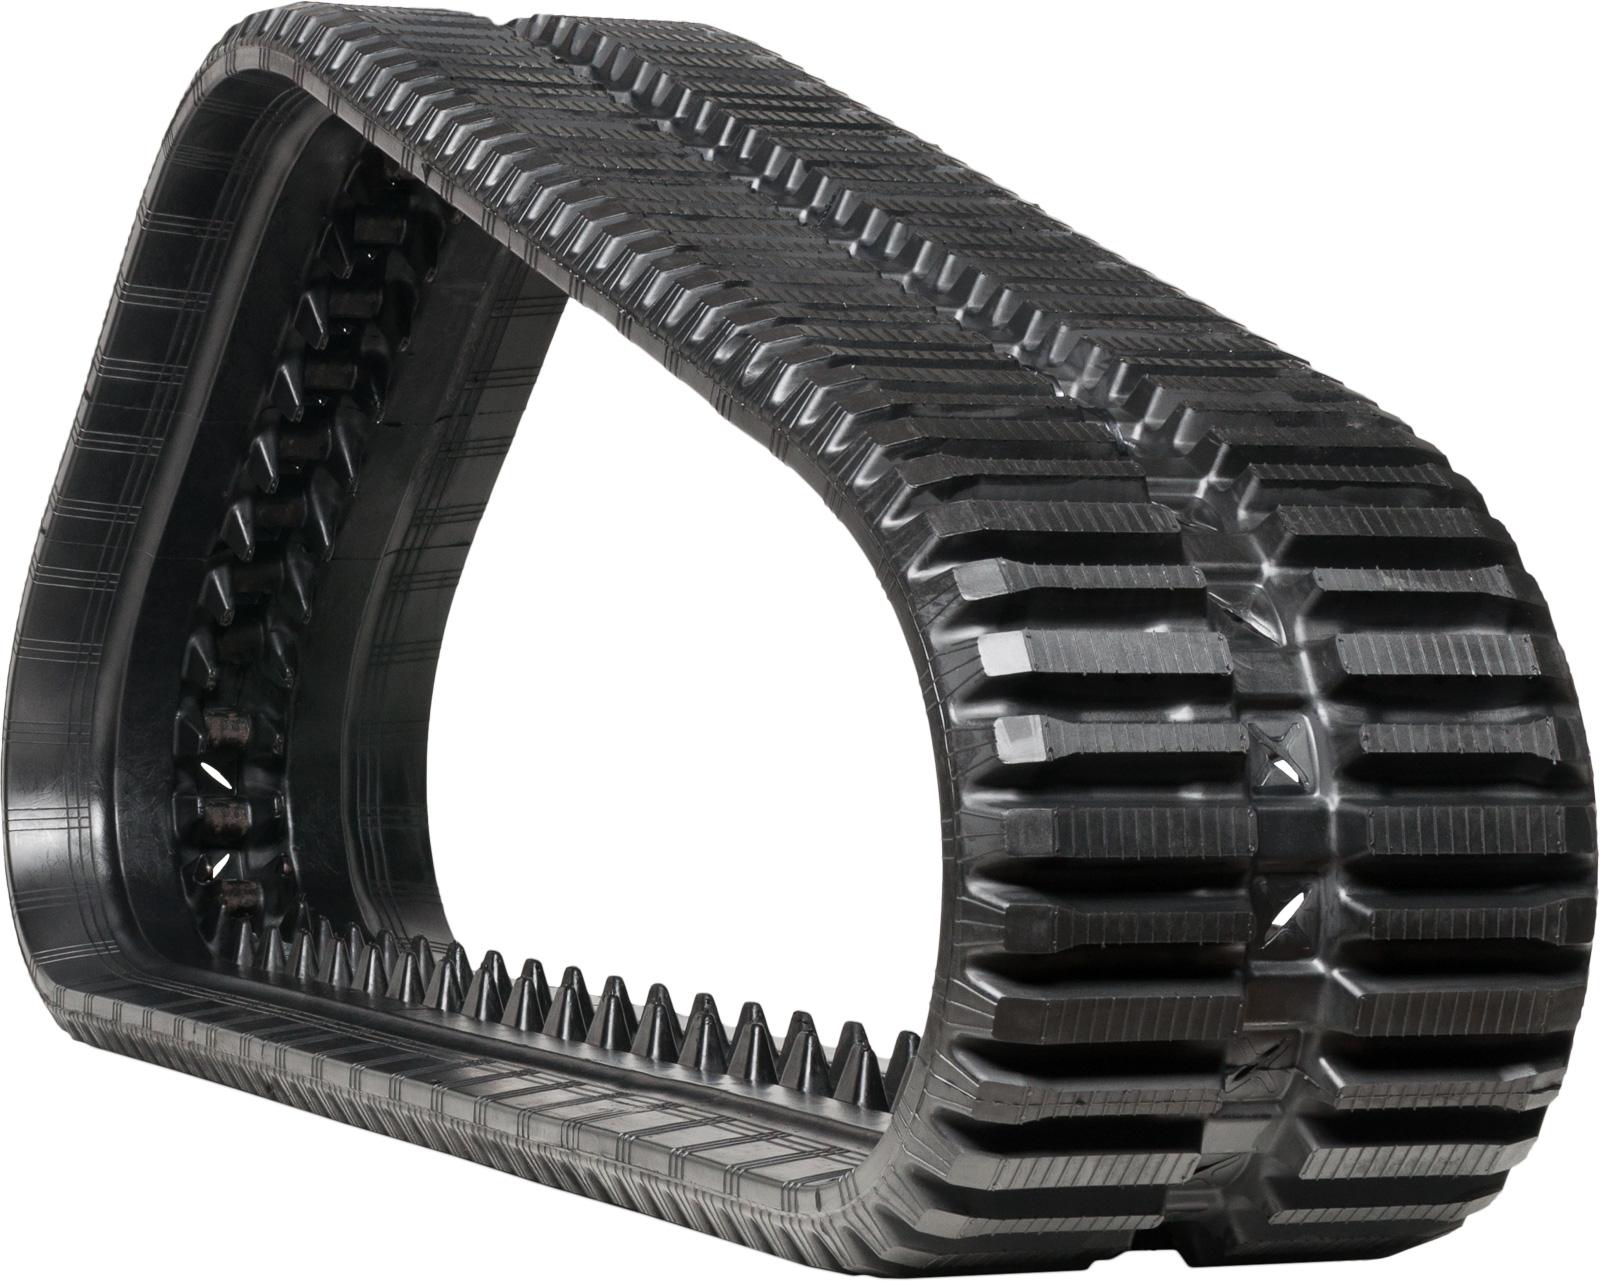 set of 2 15" heavy duty multi-bar pattern rubber track (380x86bx52)